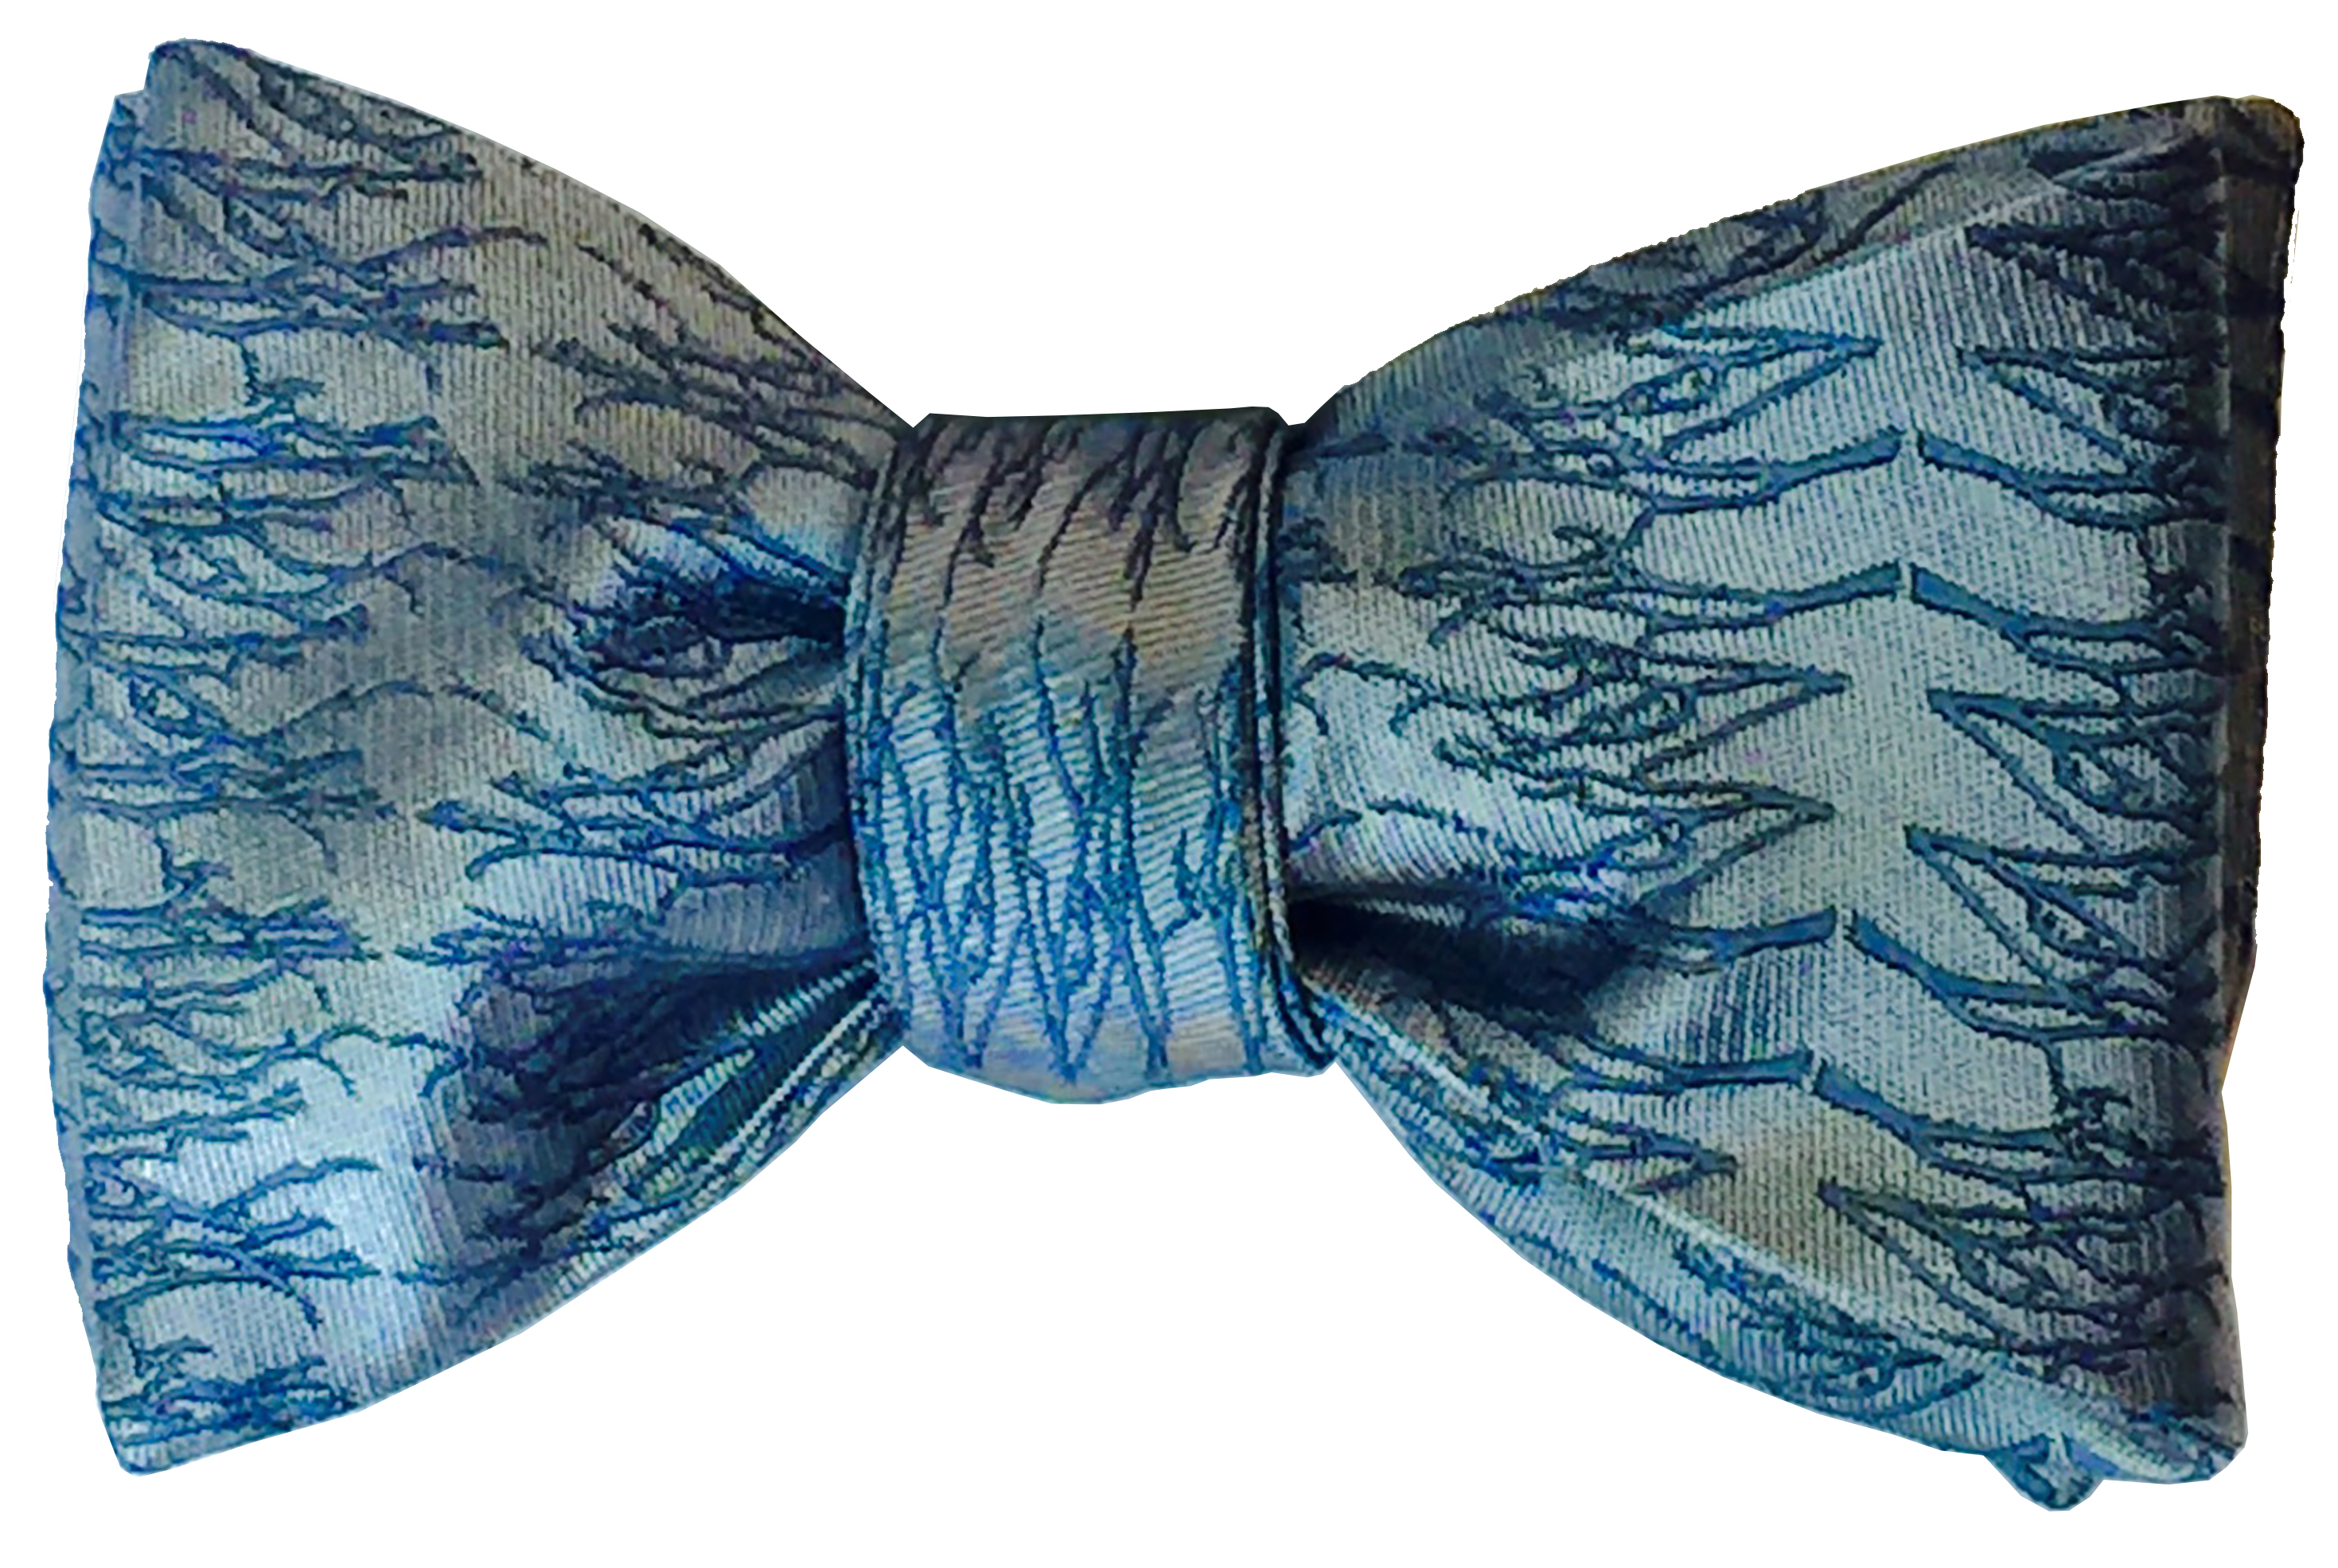 Winter Twig bow tie in arctic blue